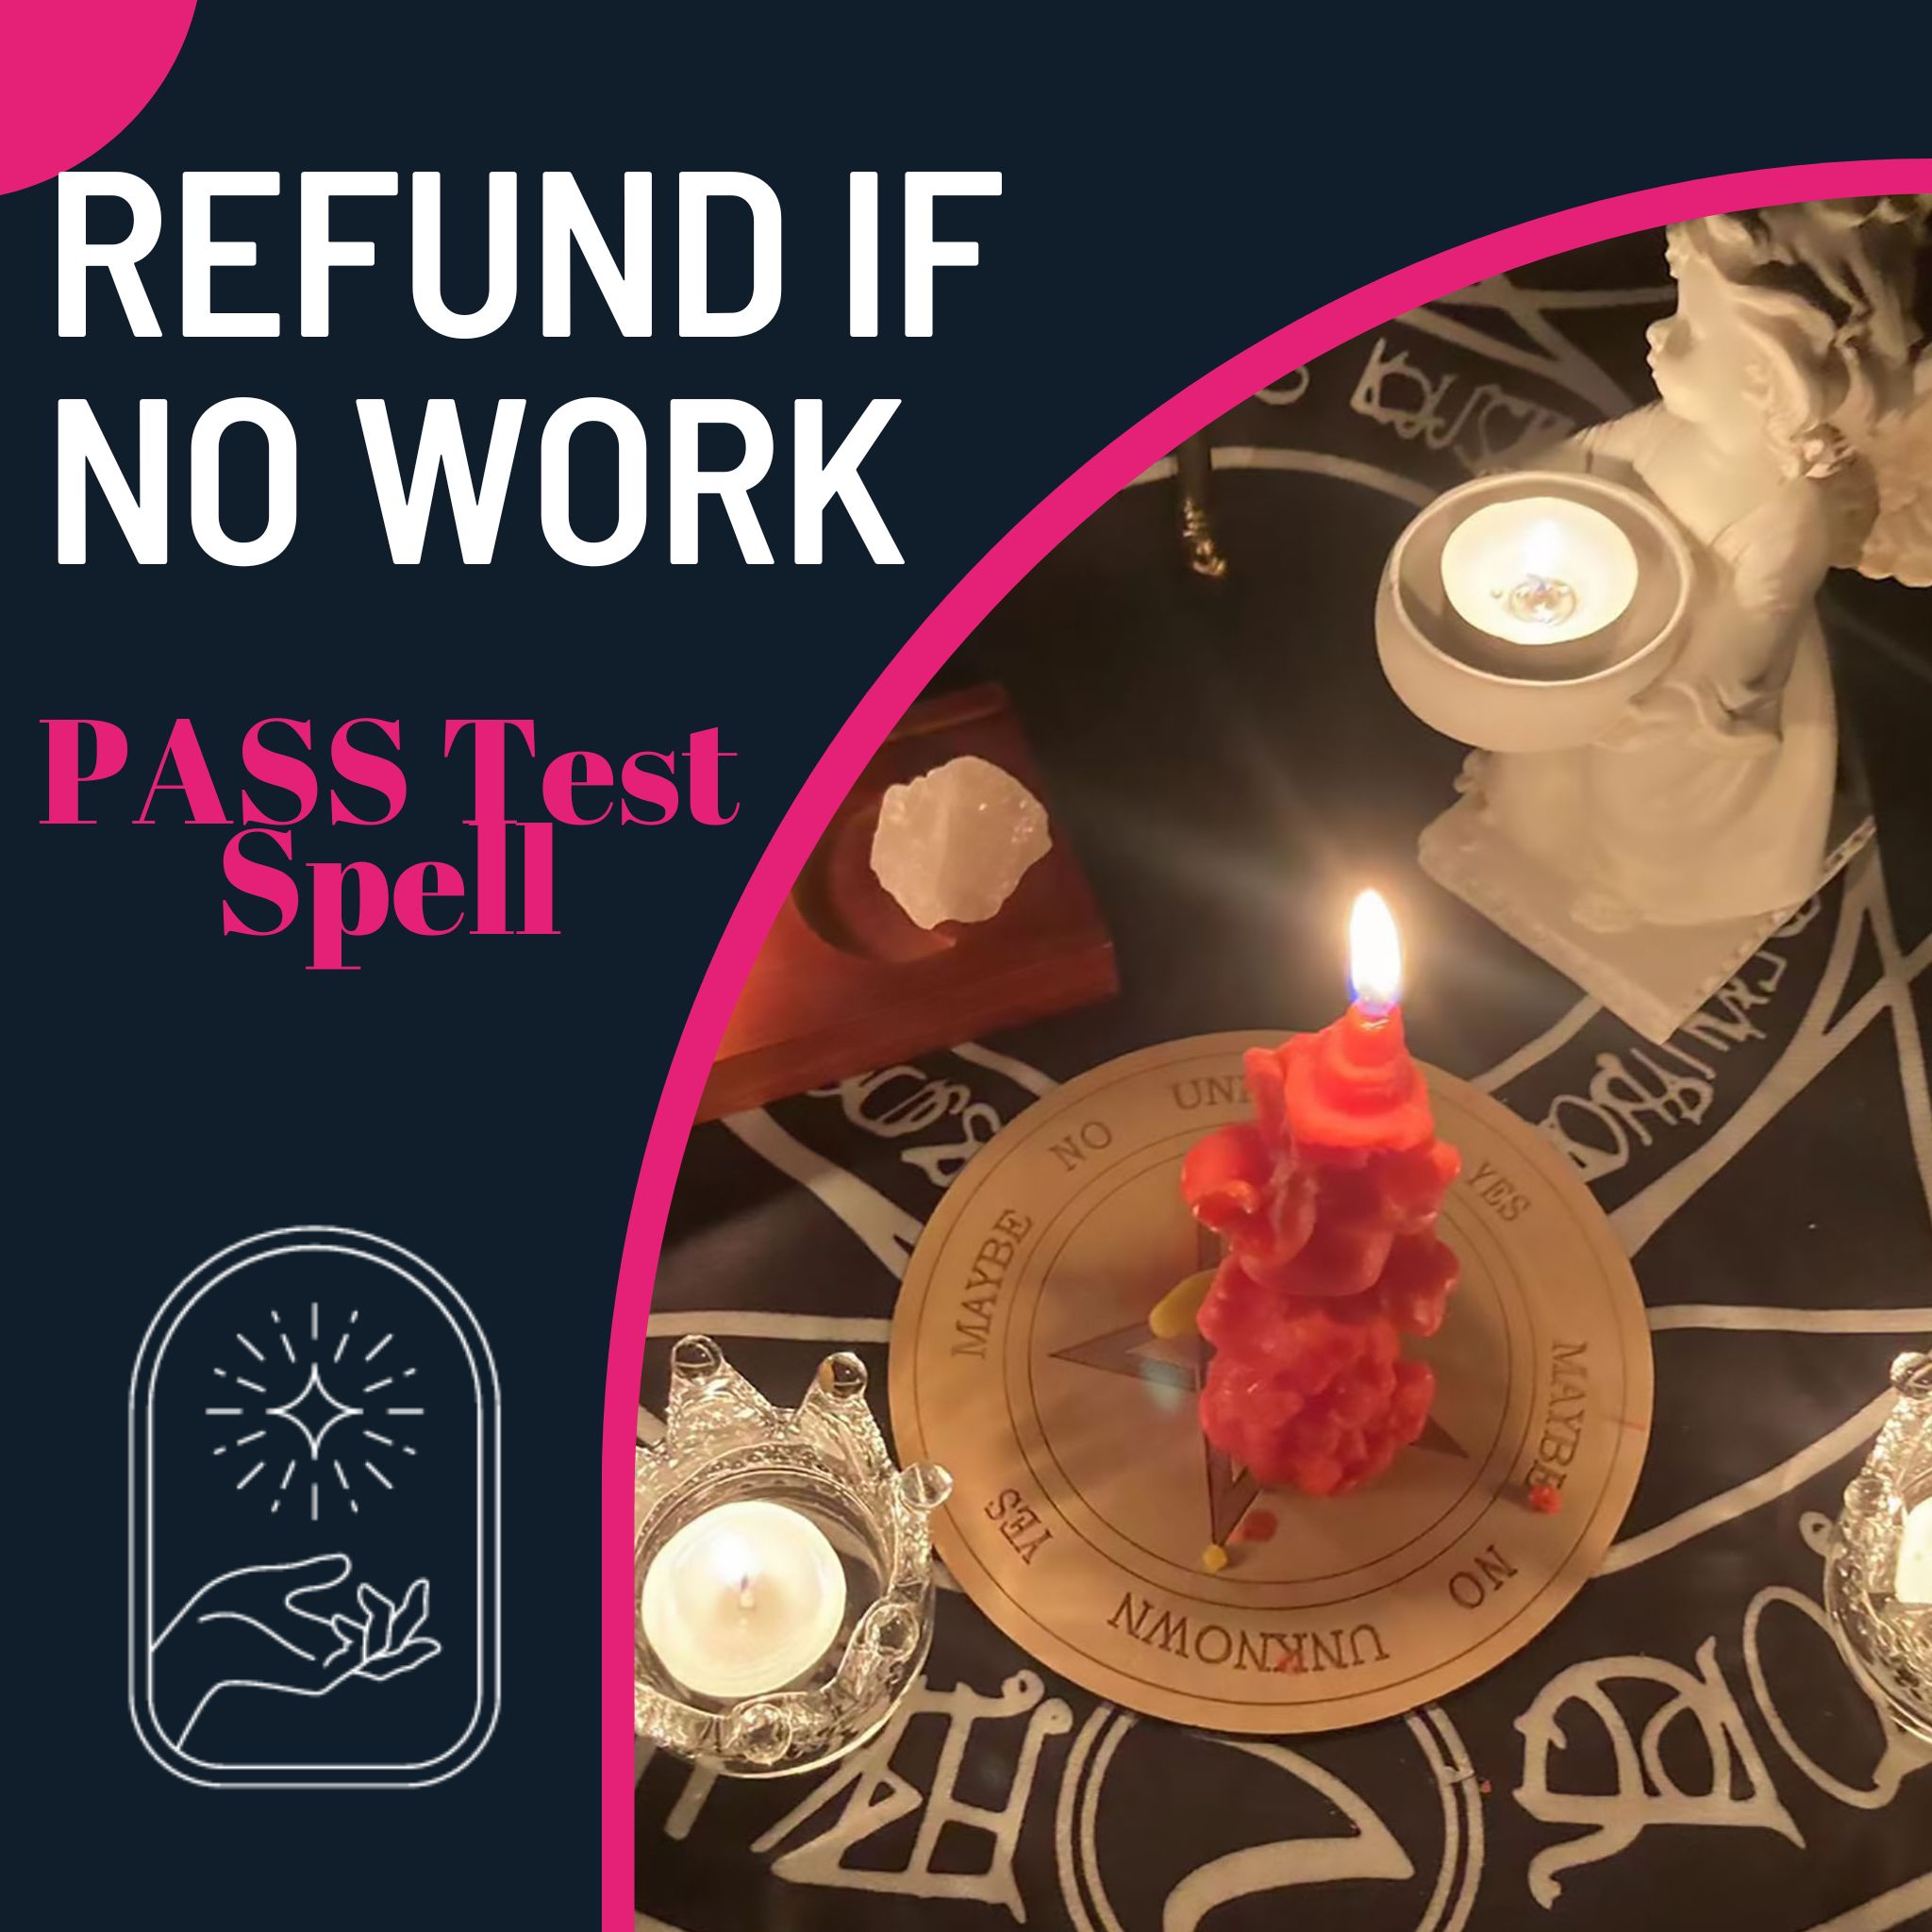 PASS Test Spell 【Refund if No Work】